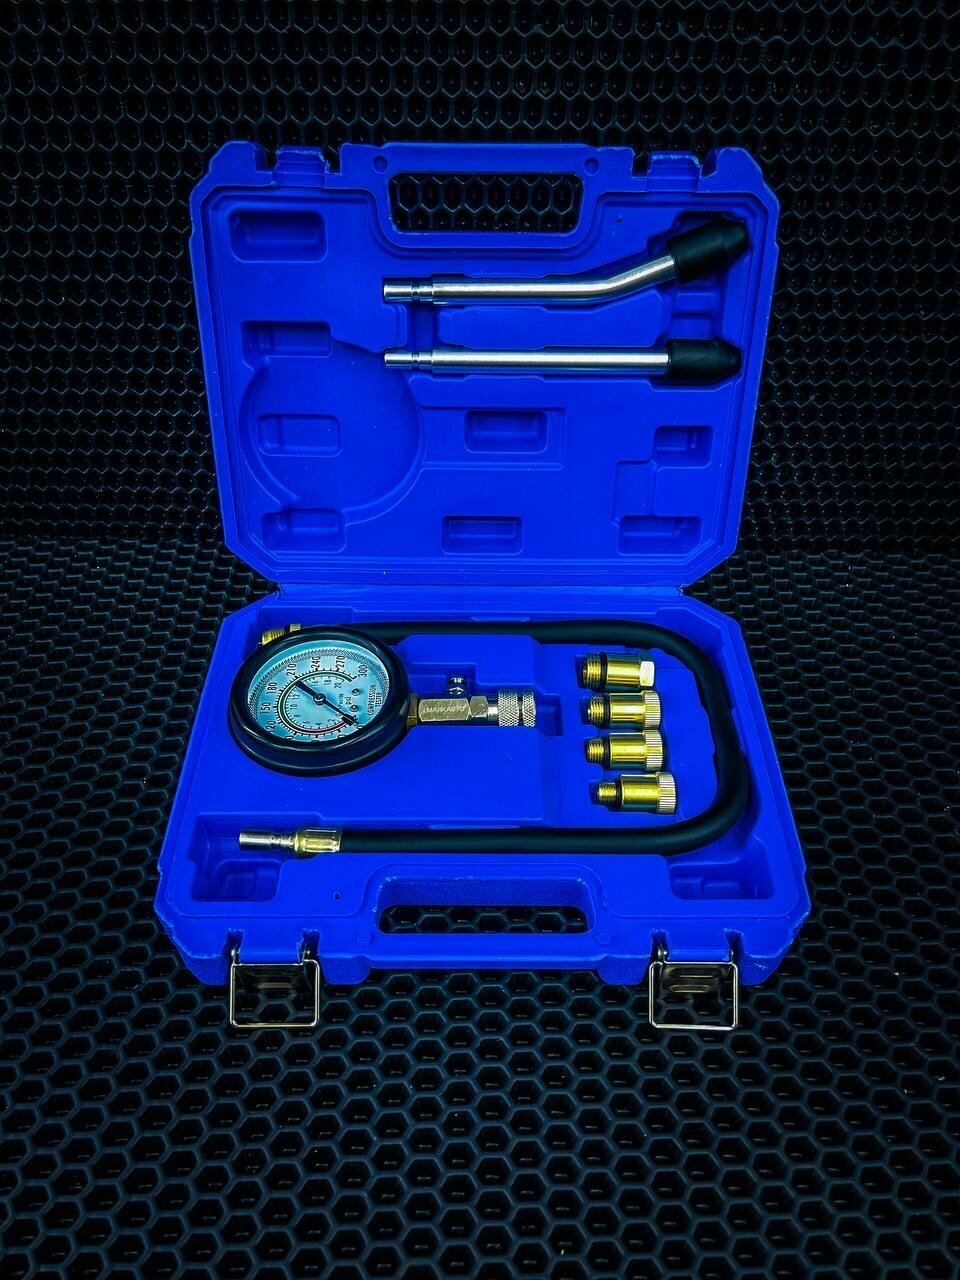 Компрессометр для двигателя маякавто / компрессометр для бензиновых двигателей маякавто / набор для измерения компрессии 8 пр. маякавто